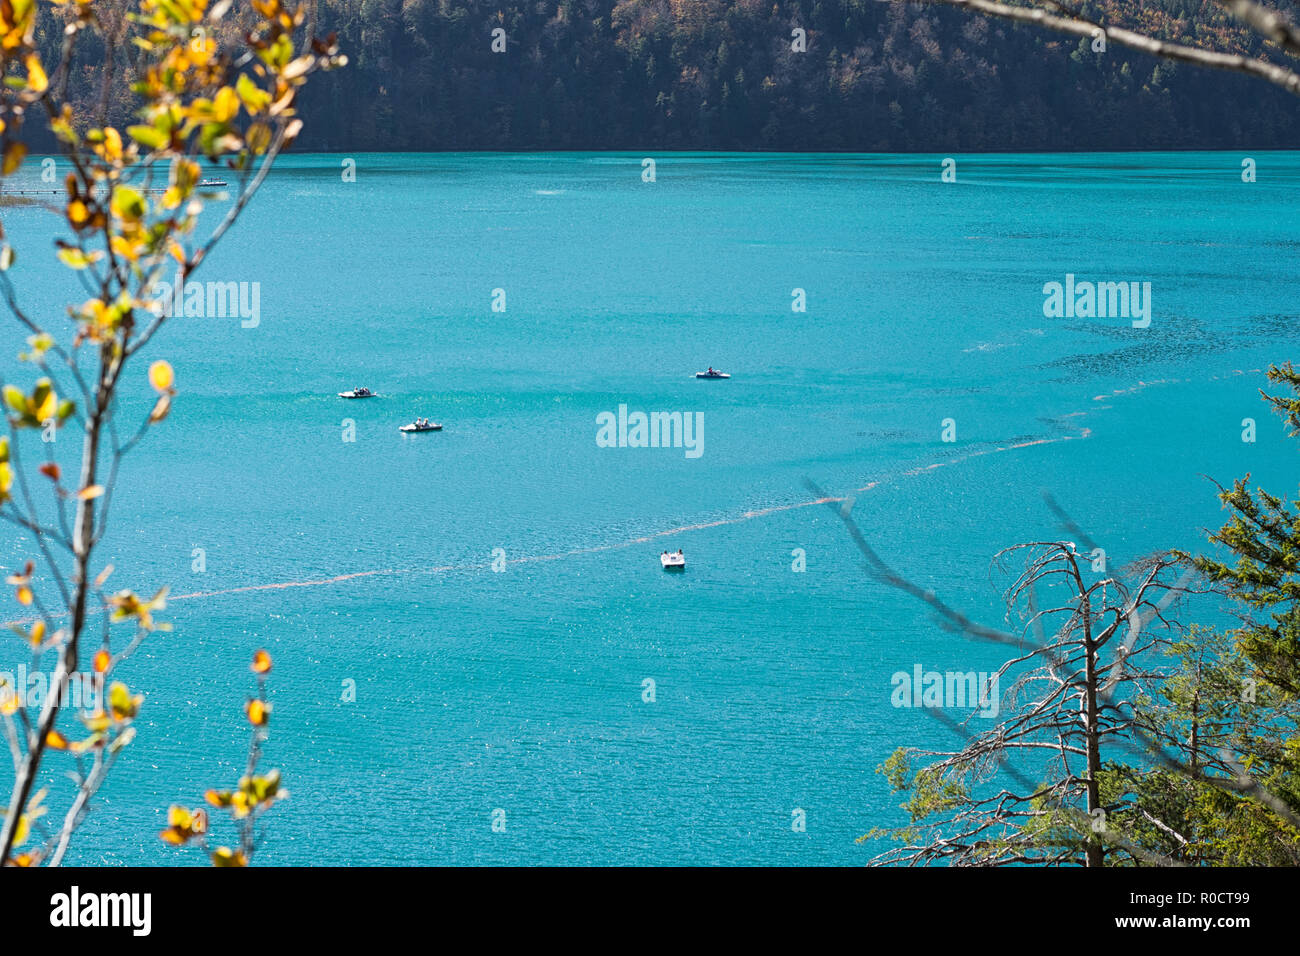 Vista dal percorso intorno al lago Alpsee, Schwangau, Germania, per il color turchese del lago con barche a pedali su di esso, in una calda giornata di sole in autunno. Foto Stock